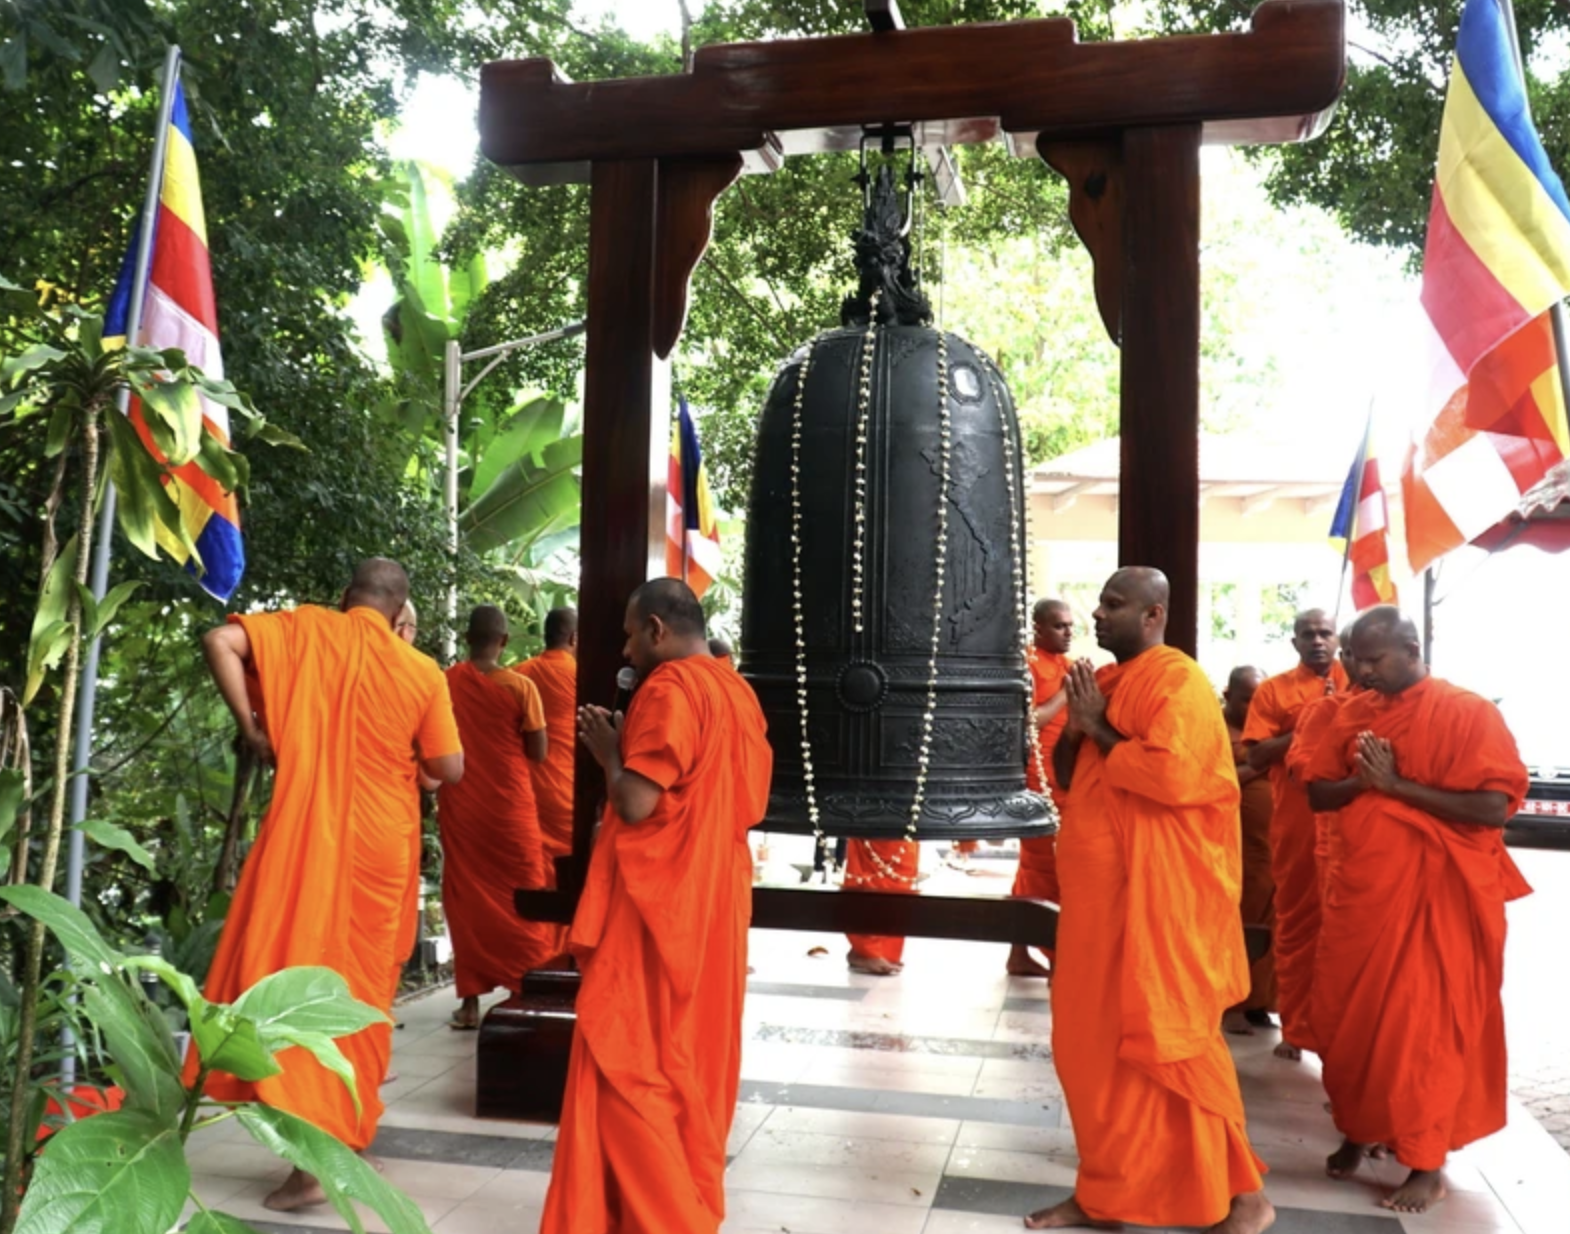 越南人赠送给三宝岭佛寺的铜钟。